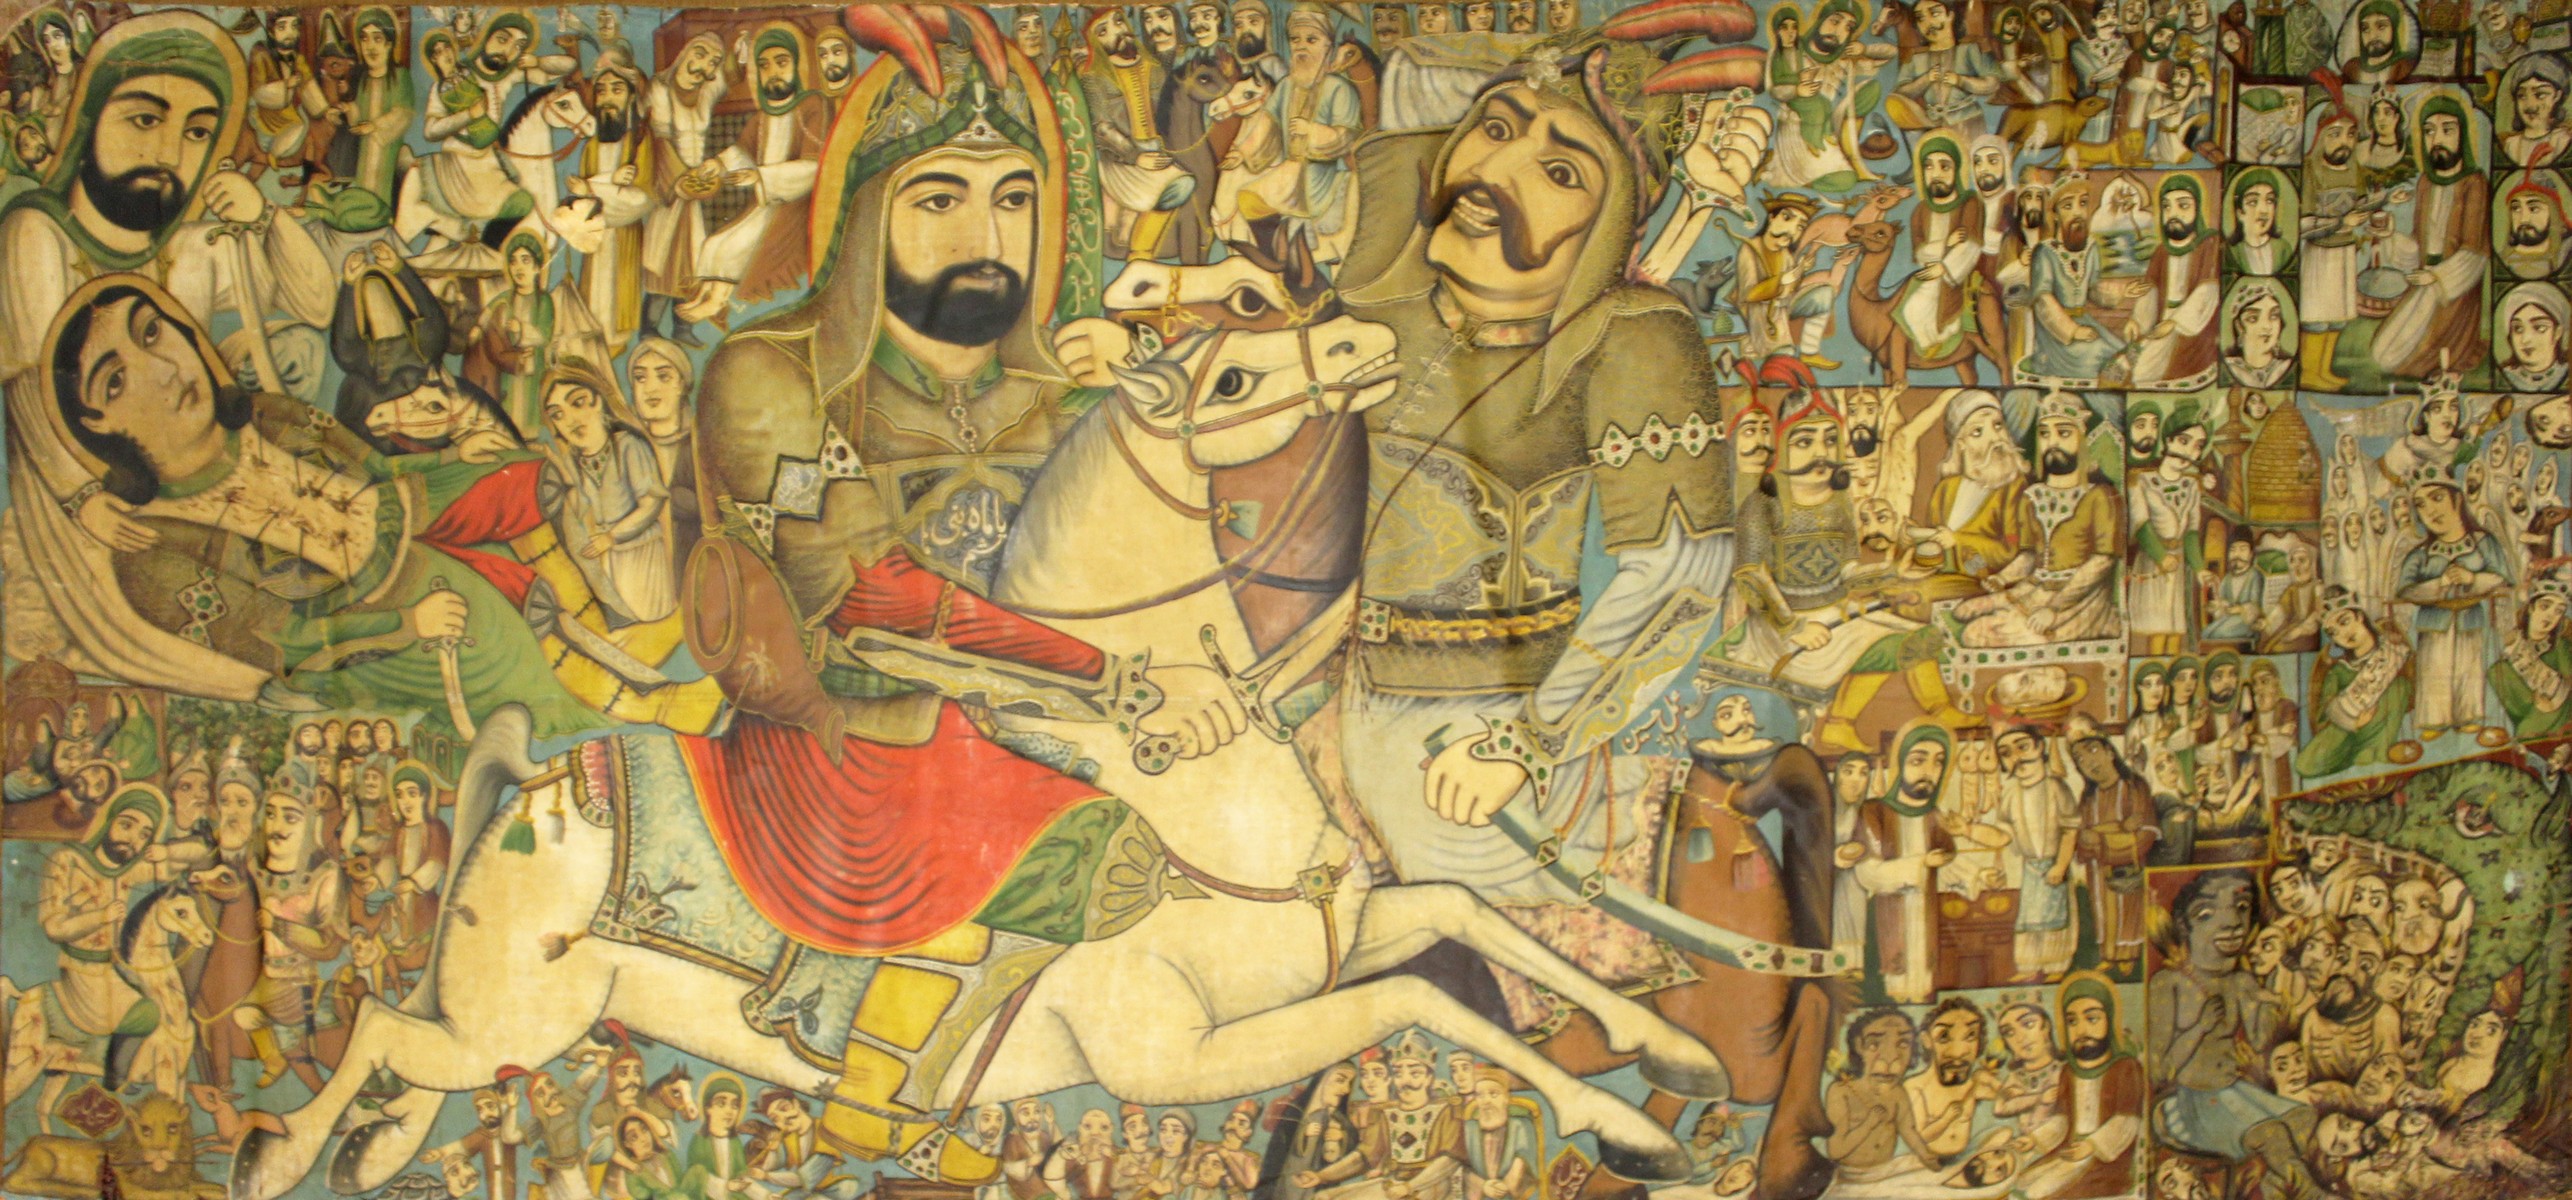 Hussain Hamlani, Persian School, Late 19th/Early 20th Century. 'The Battle of Kerbala', Hasan riding